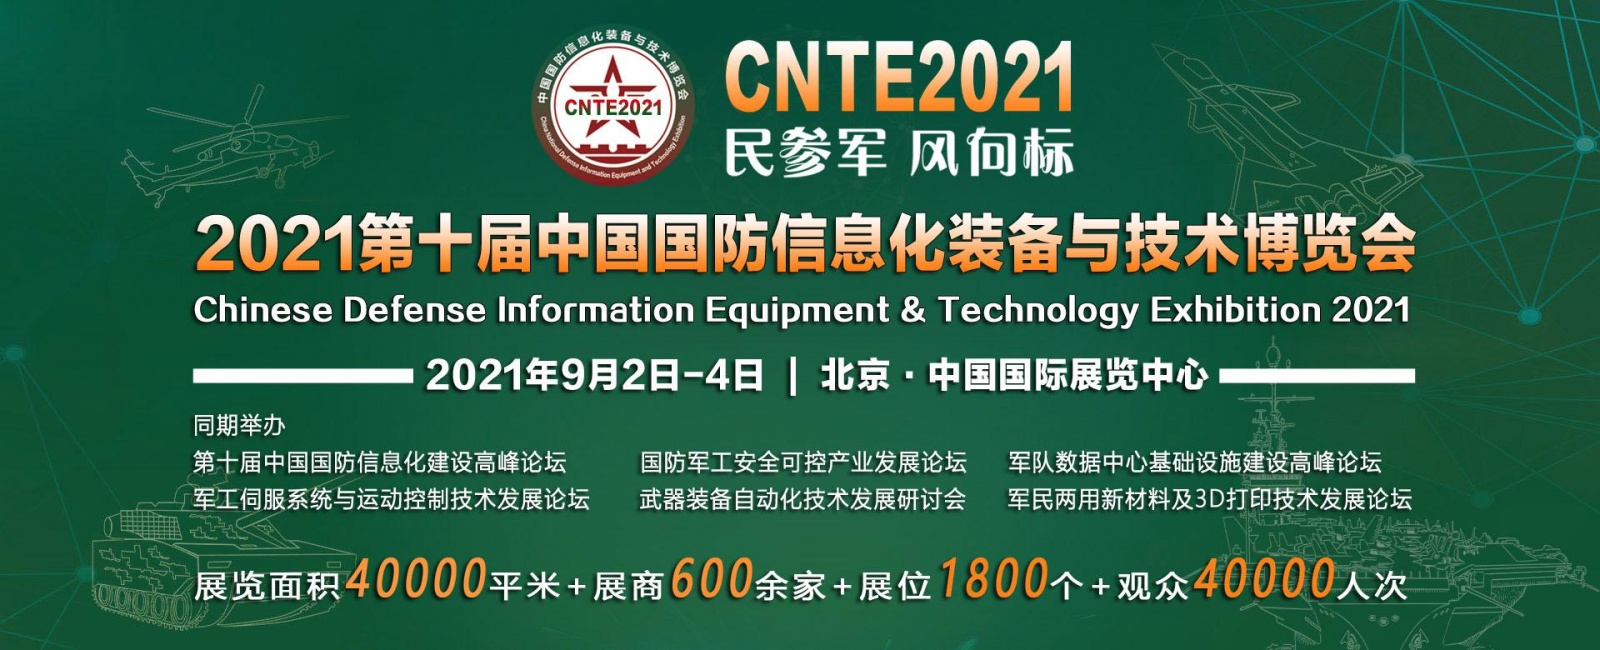 2021第10届中国国防信息化装备与技术博览会